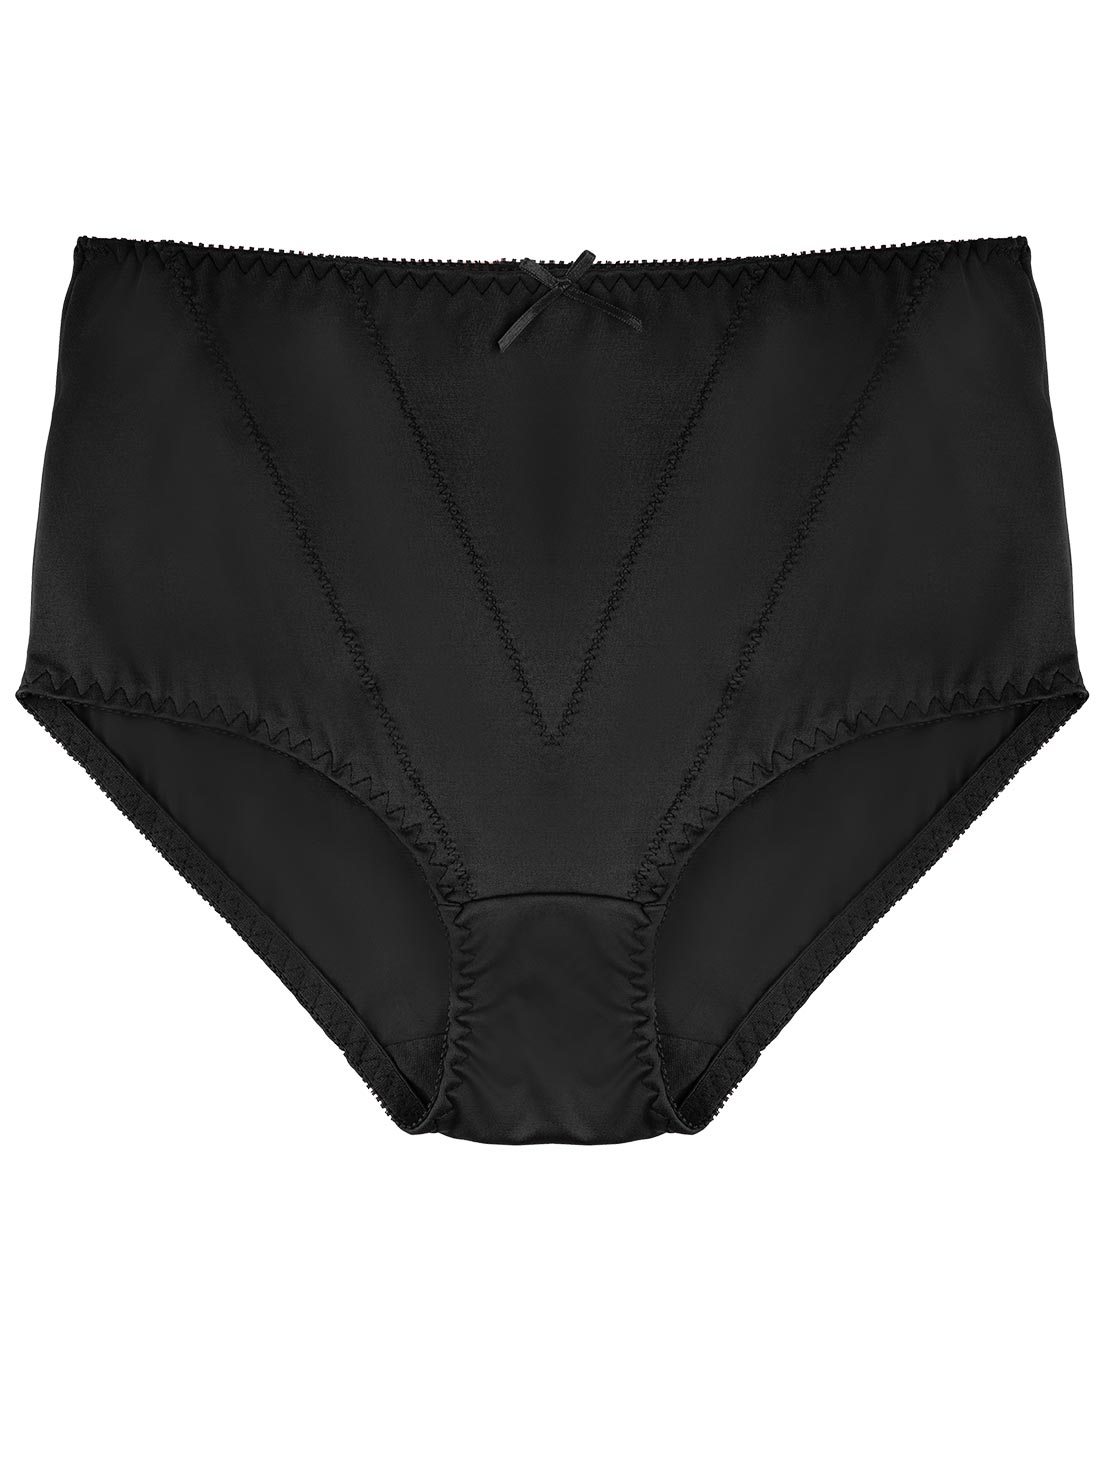 Compression Underwear Women: Panty 2155